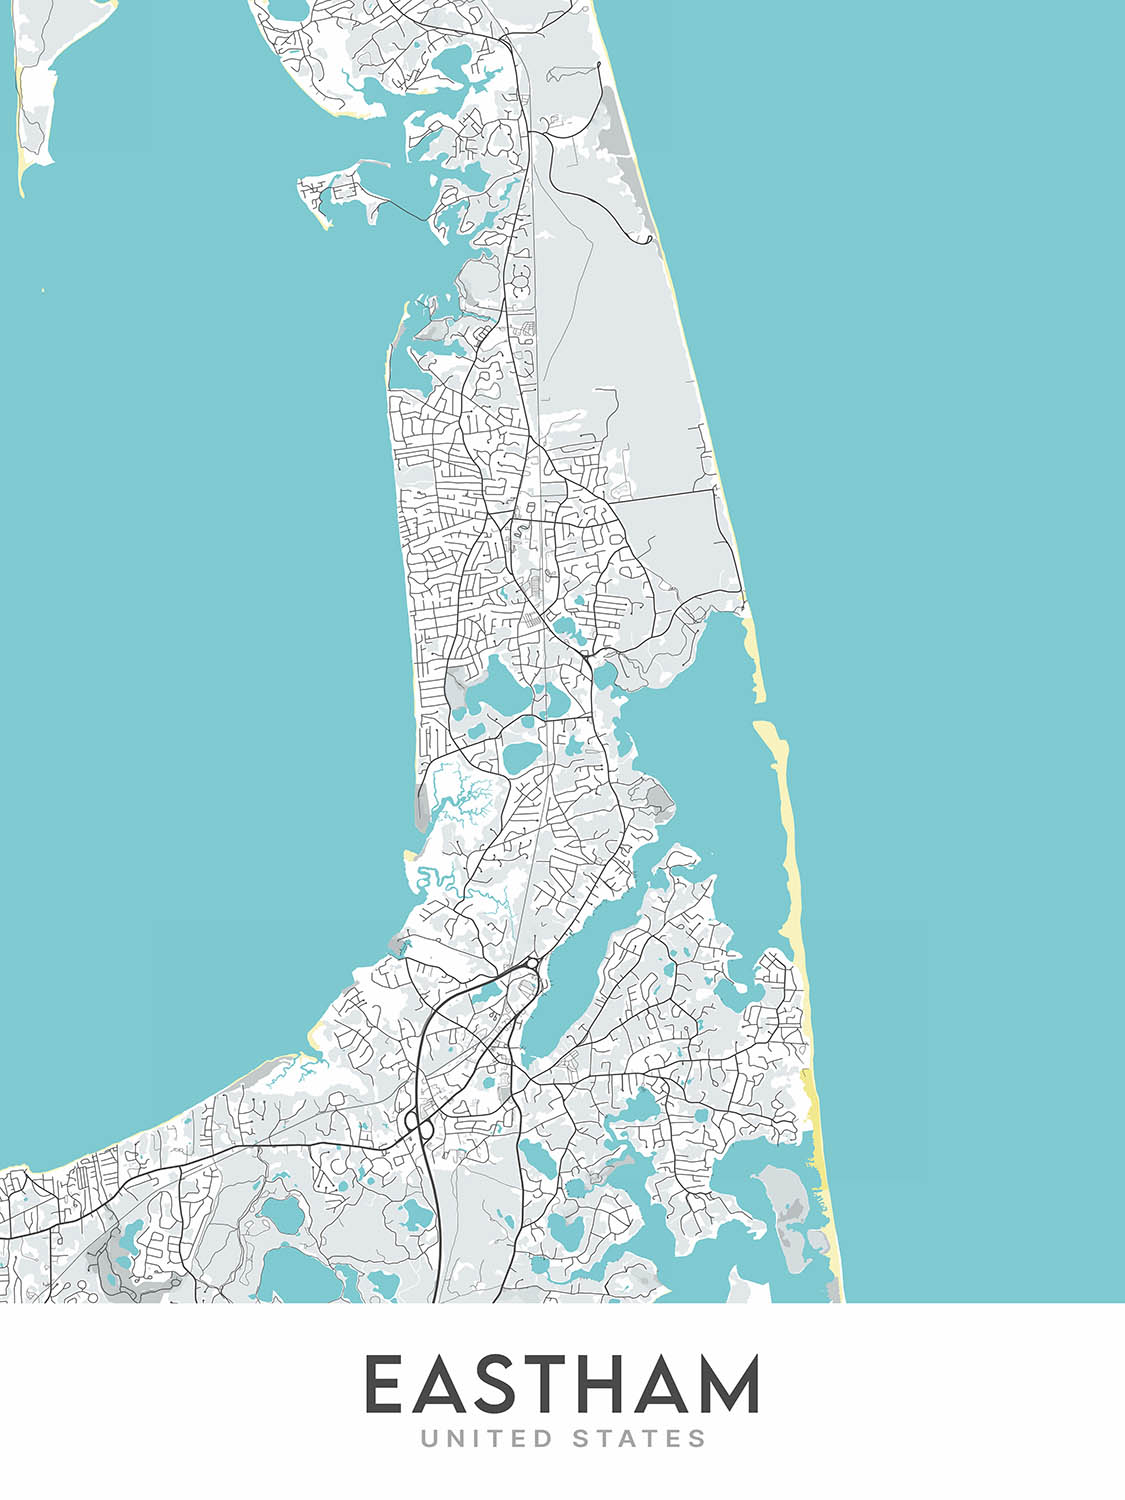 Plan de la ville moderne d'Eastham, MA : Nauset Light Beach, Coast Guard Beach, First Encounter Beach, Fort Hill, Rock Harbor